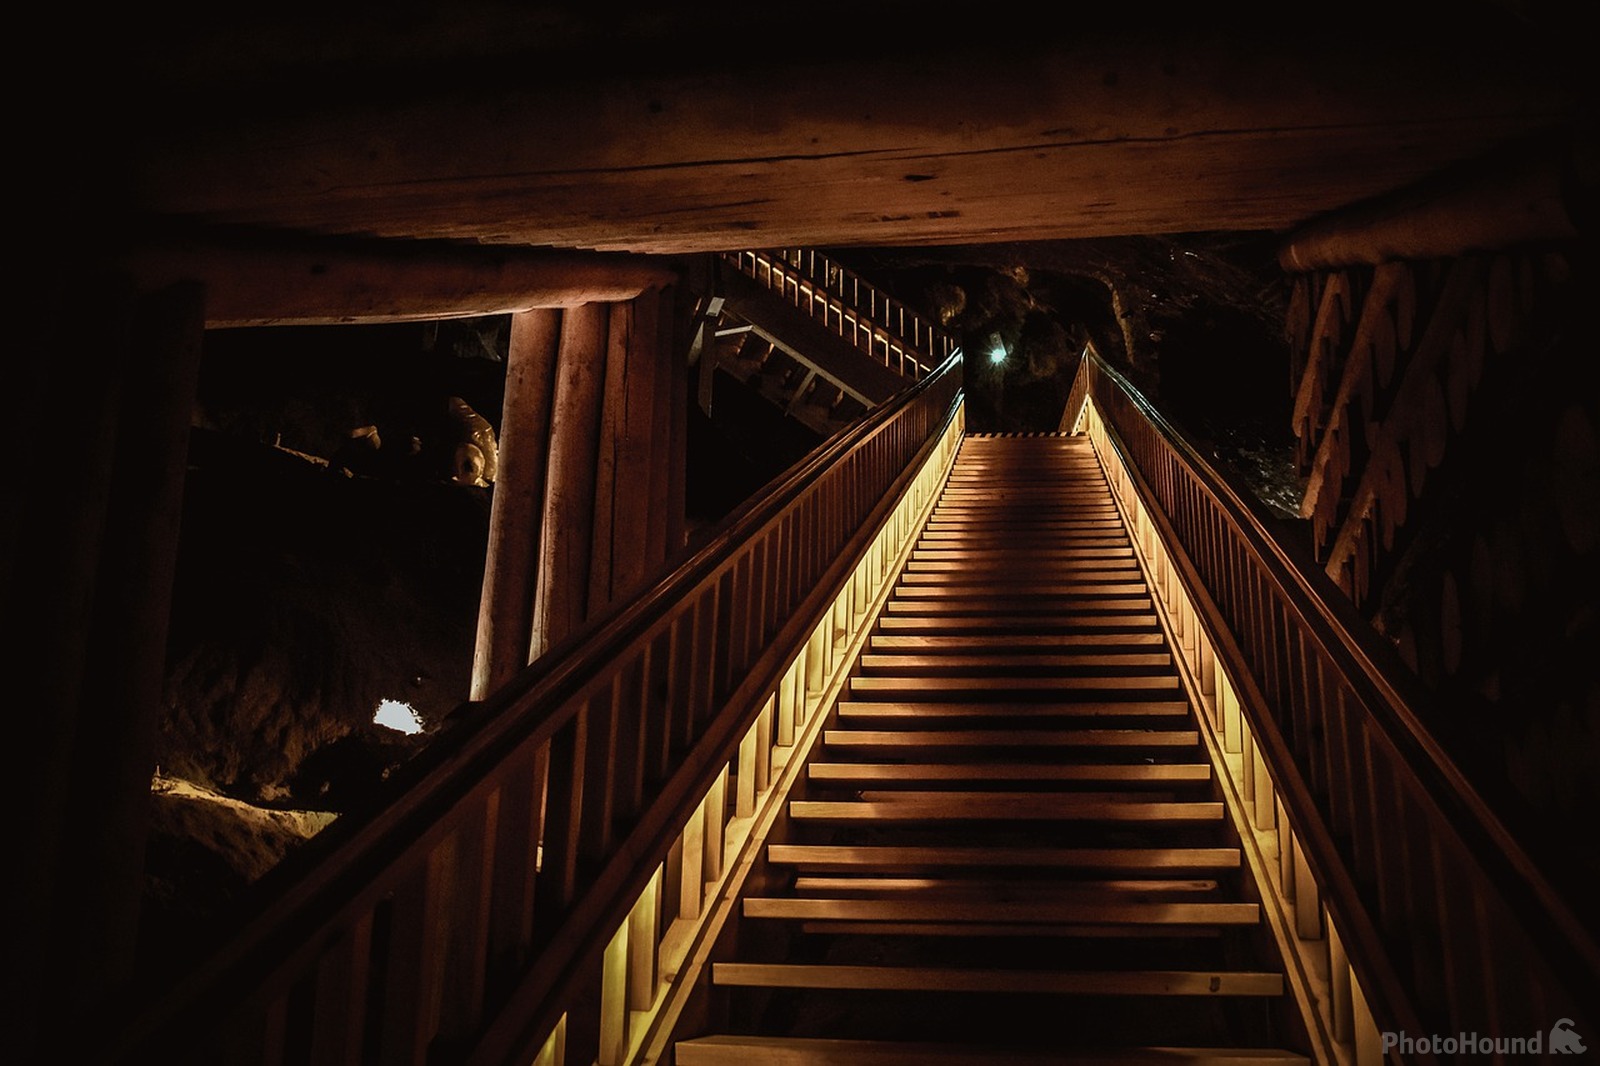 Image of Wieliczka Salt Mine by Team PhotoHound